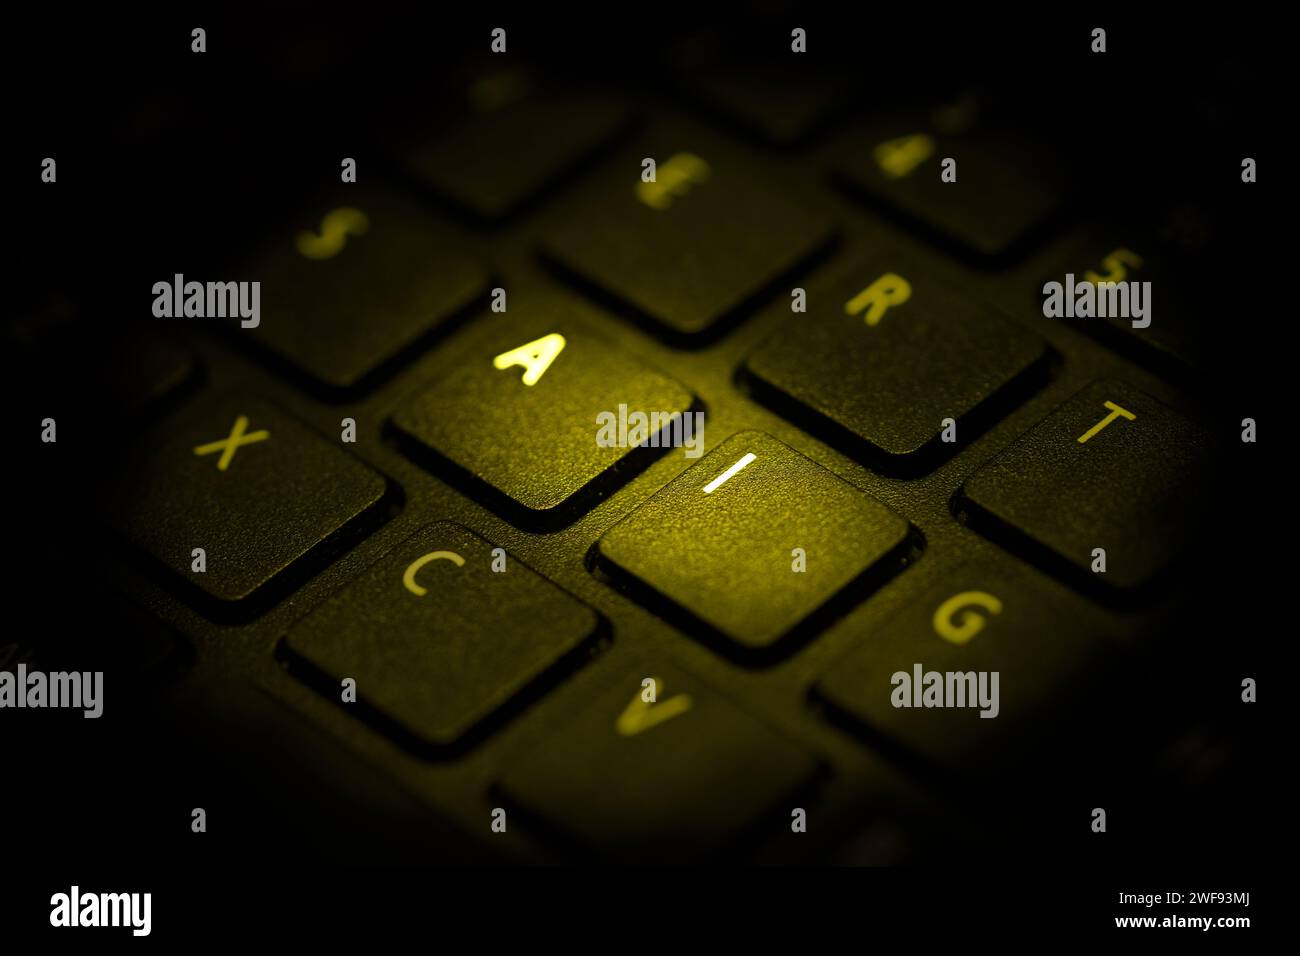 teclado iluminado con luz amarilla resaltando letras a i, de cerca Foto de stock